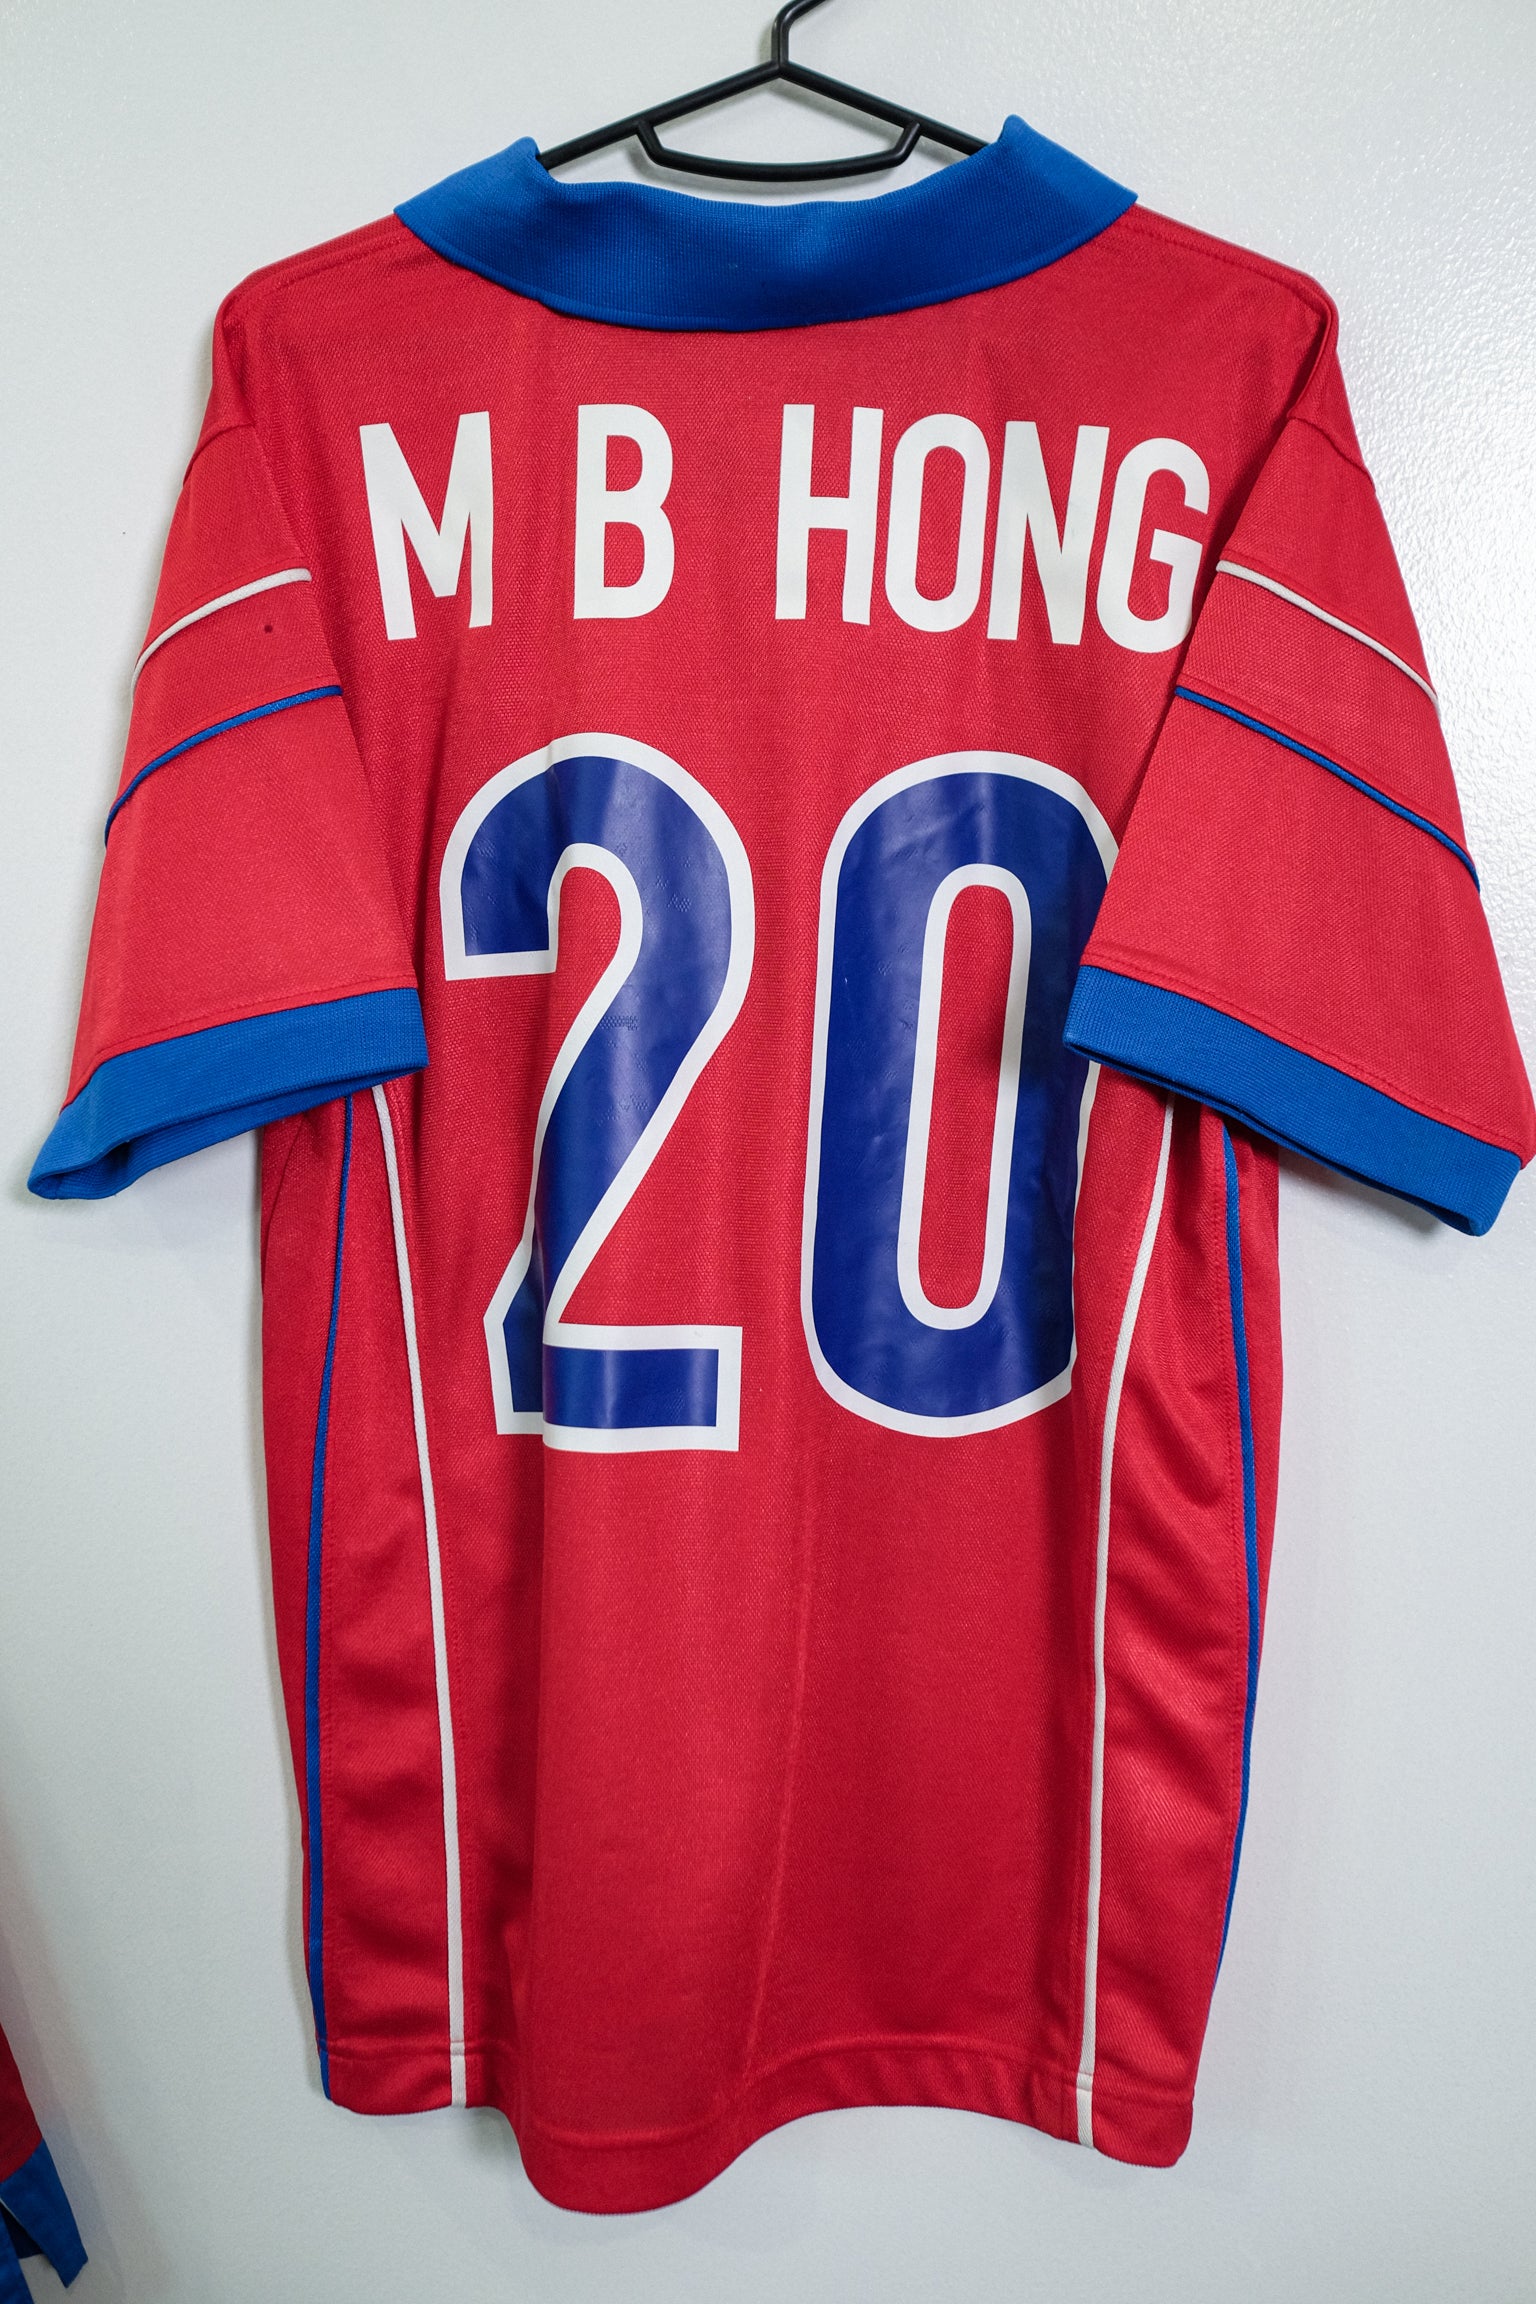 Hong Myung-bo South Korea classic jersey